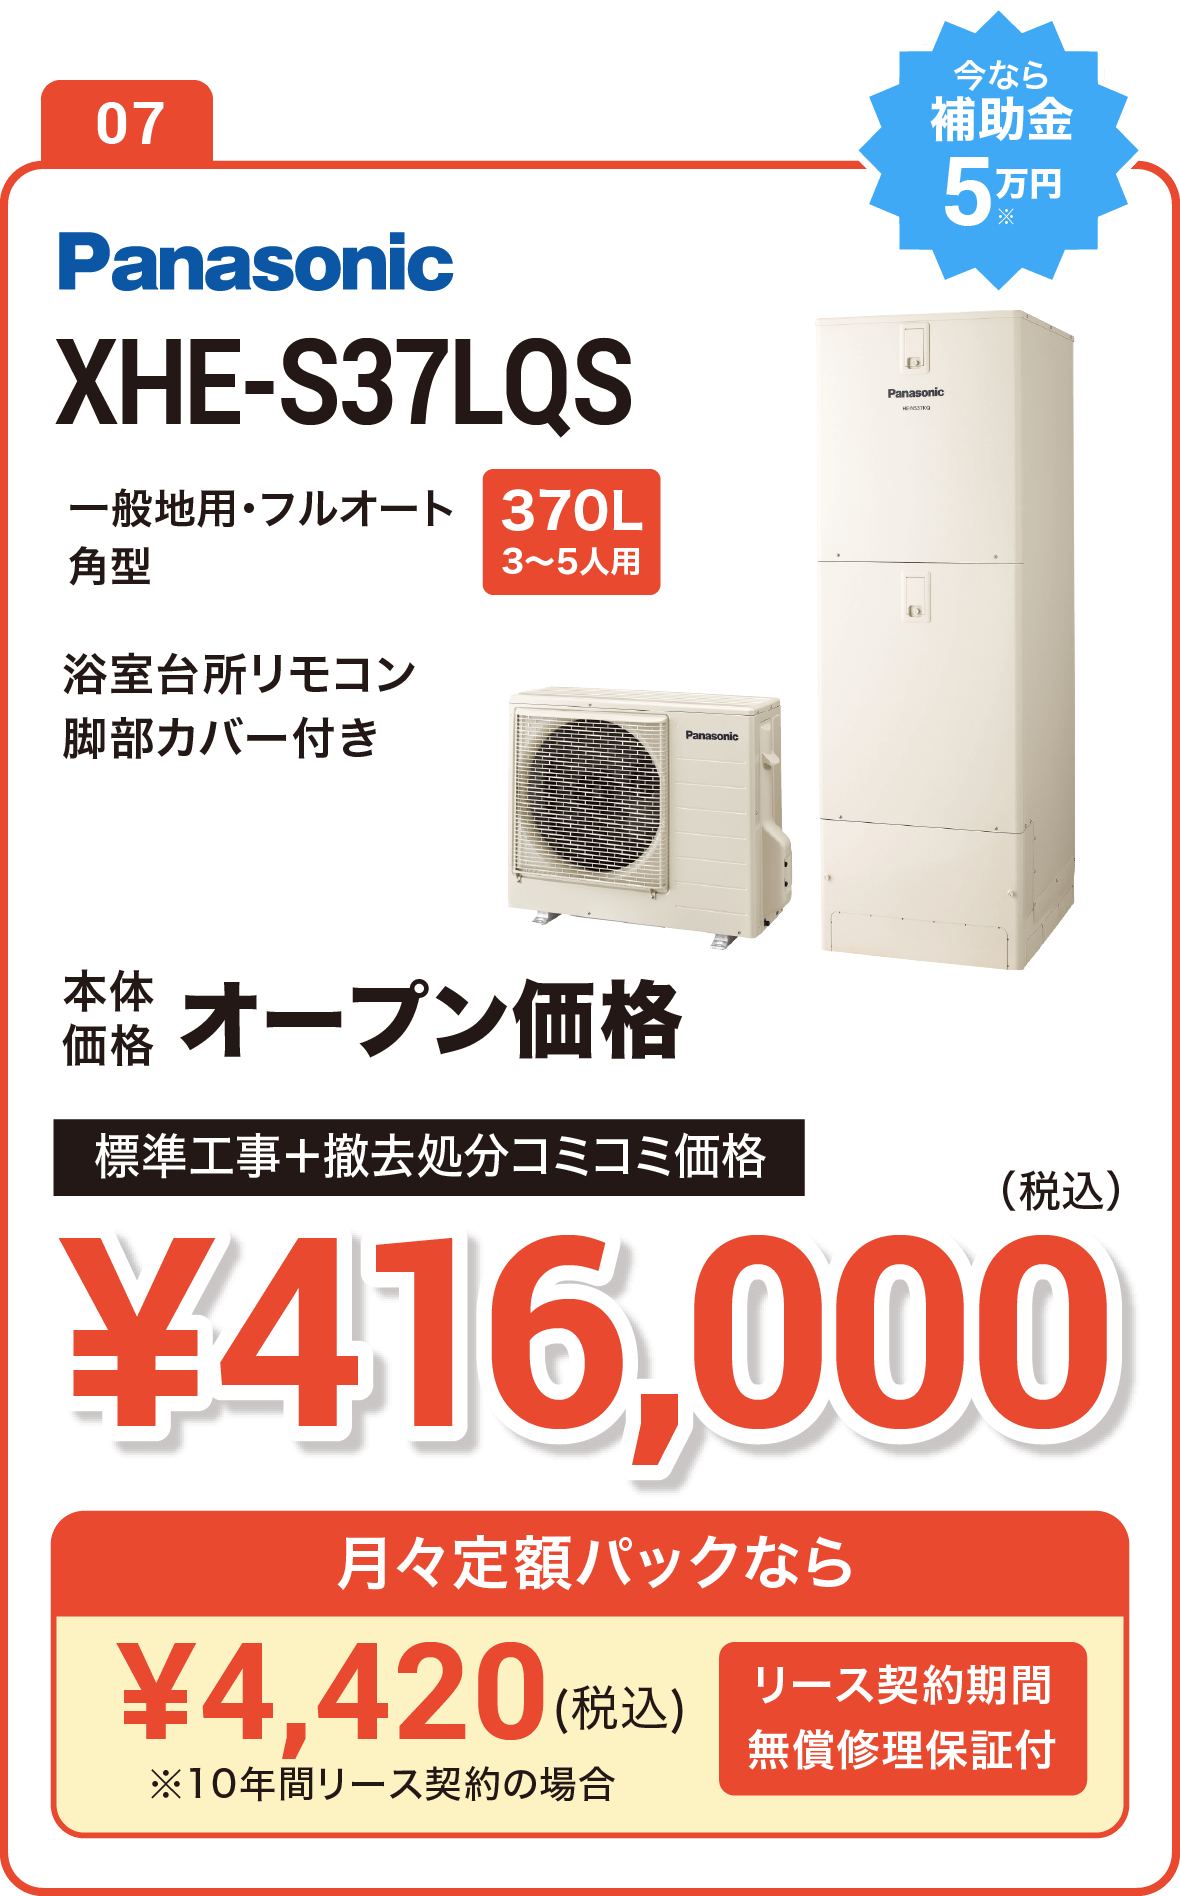 【今なら補助金10万円】Panasonic XHE-SU37LQS 370L(3～5人用) 標準工事＋撤去処分コミコミ価格で実質で380,000円（税込）、月々定額パックなら5,160円（税込）